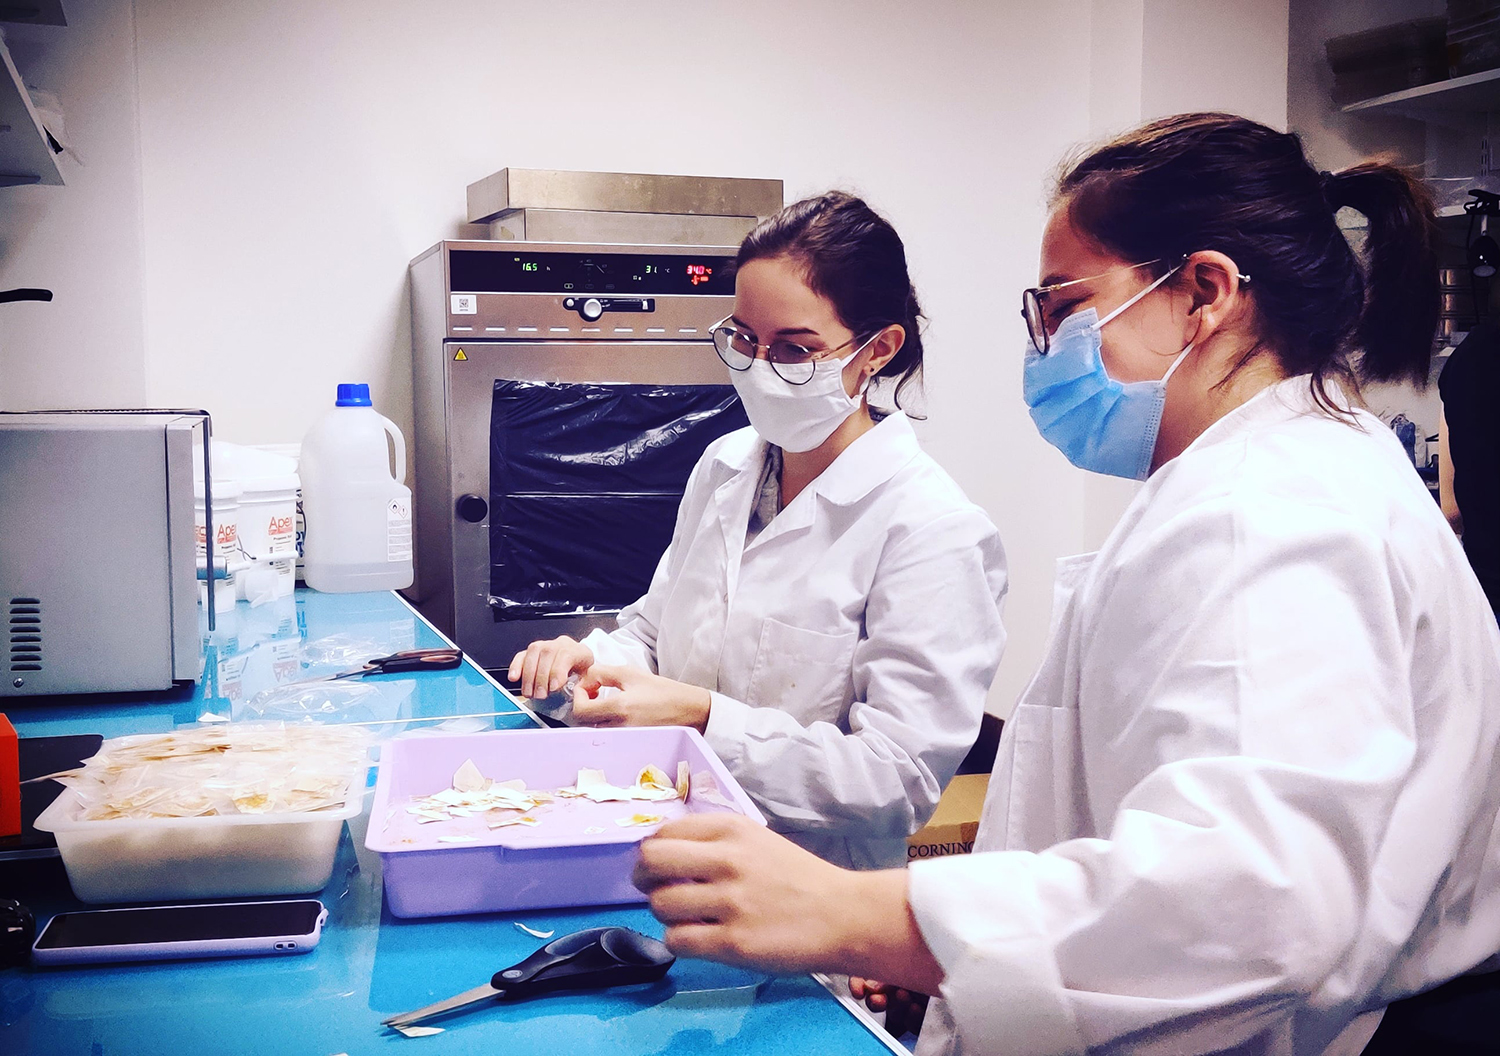 Dans son laboratoire, Audrey travaille en équipe. Ici, deux de ses collaboratrices réalisent une expérience © Audrey DUSSUTOUR